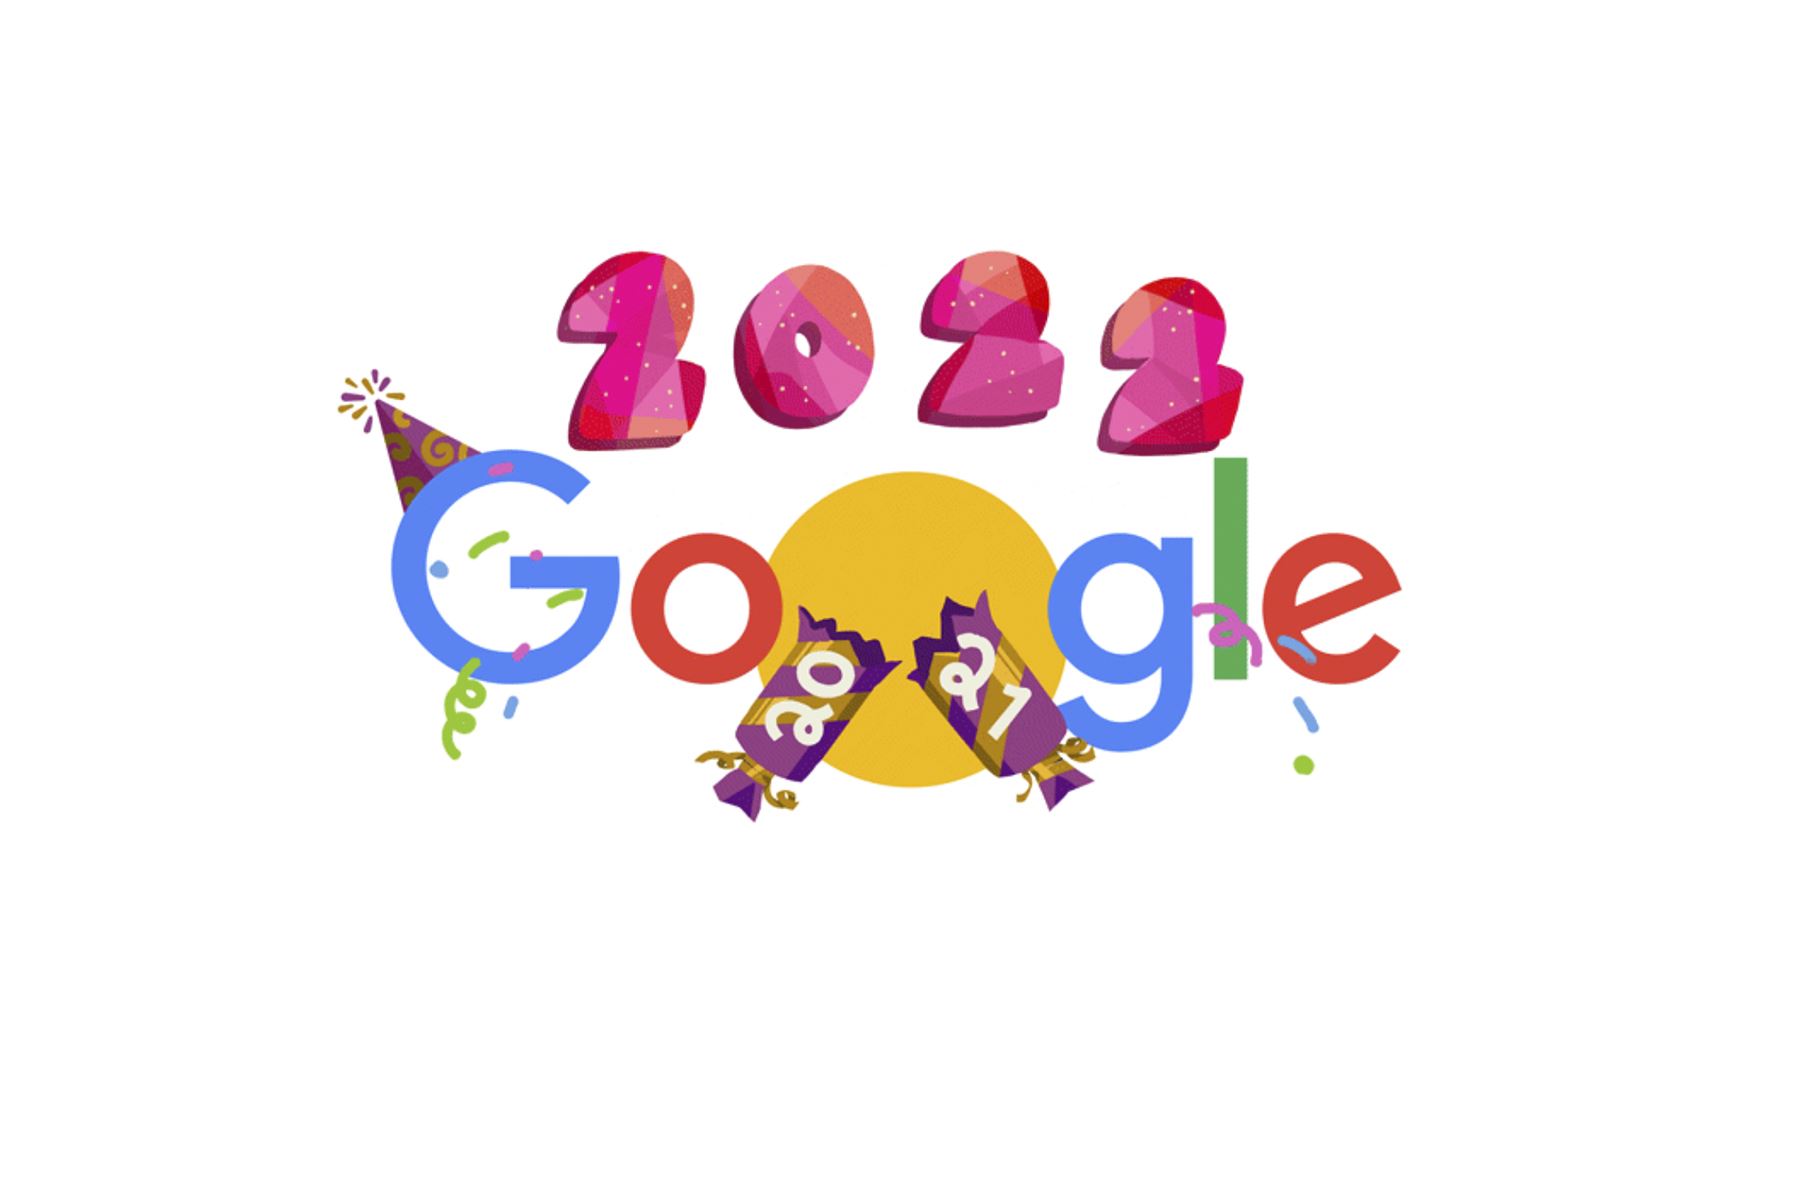 El doodle de hoy, 1 de enero, nos presenta el logo de Google con un gorrito de fiesta y el 2022 en el medio.